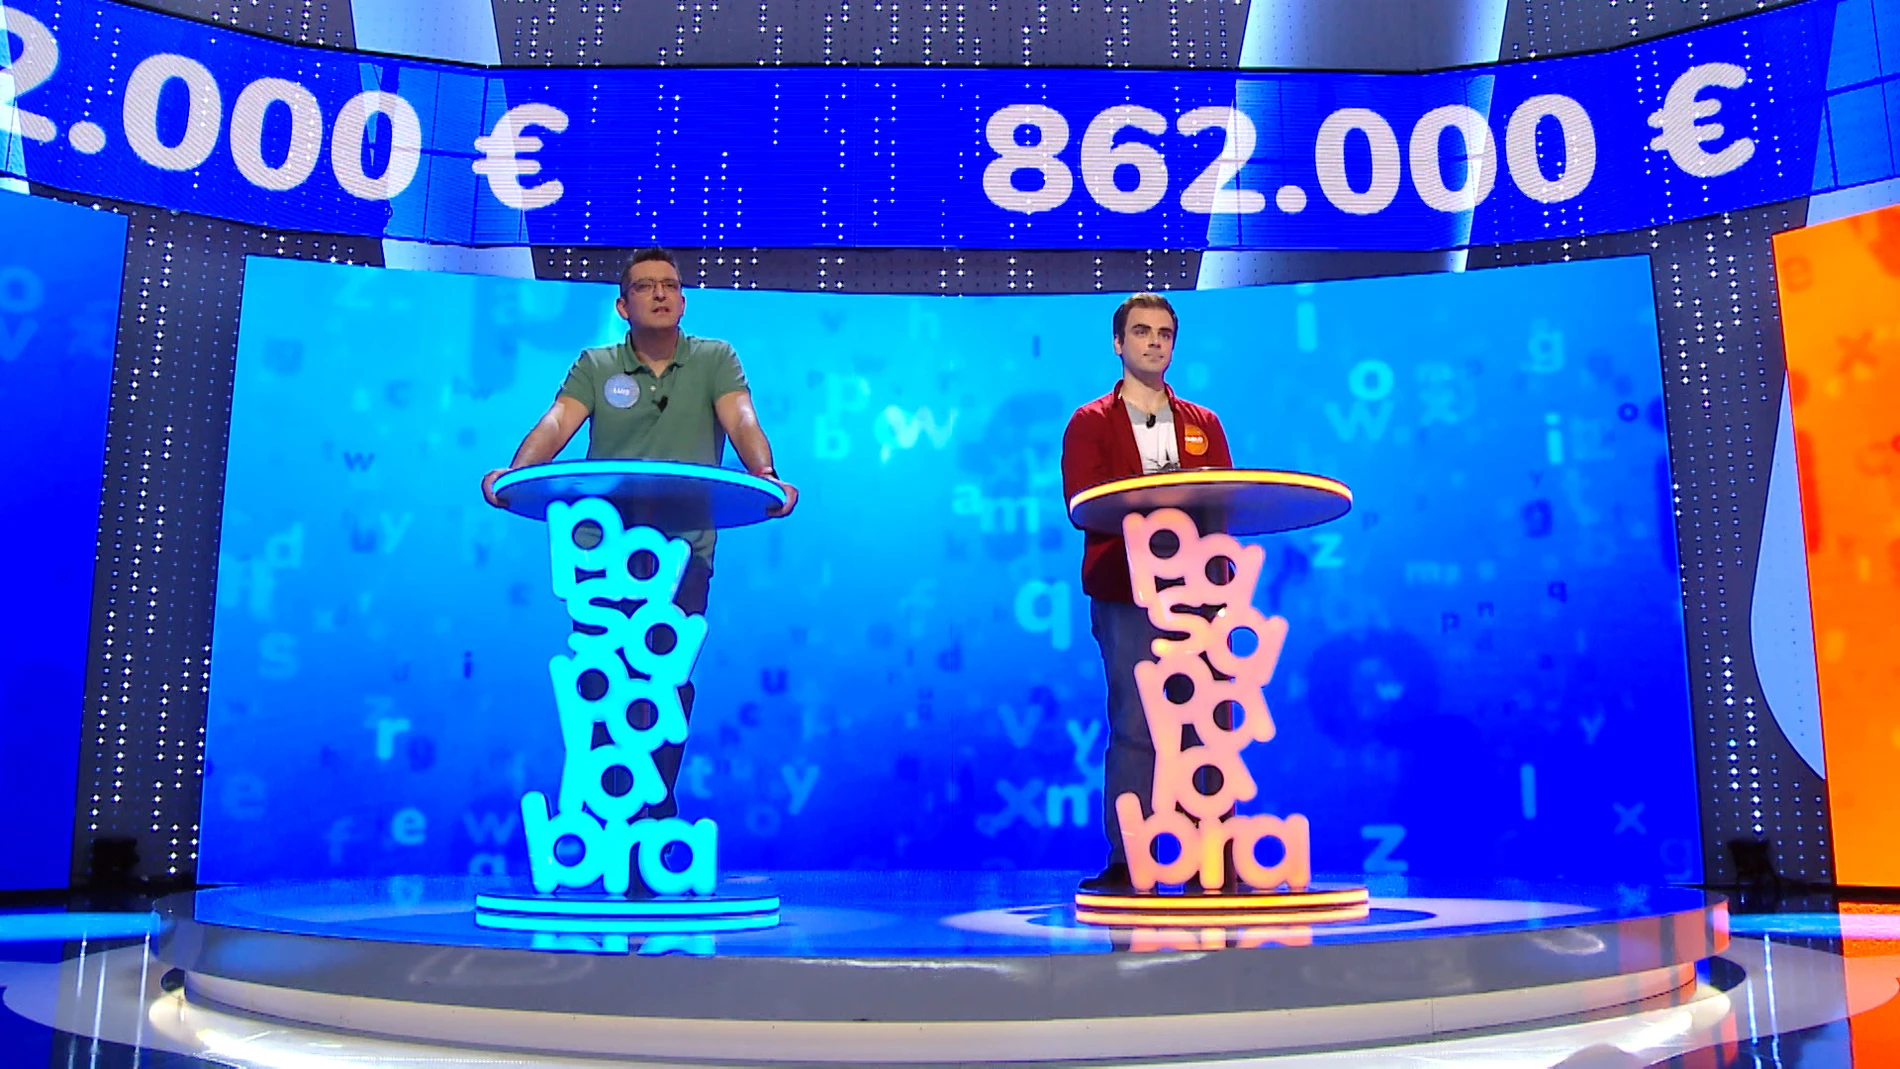 Vertiginoso enfrentamiento entre Luis y Pablo en ‘El Rosco: Los concursantes rozan la perfección en su lucha por un bote de 862.000 euros